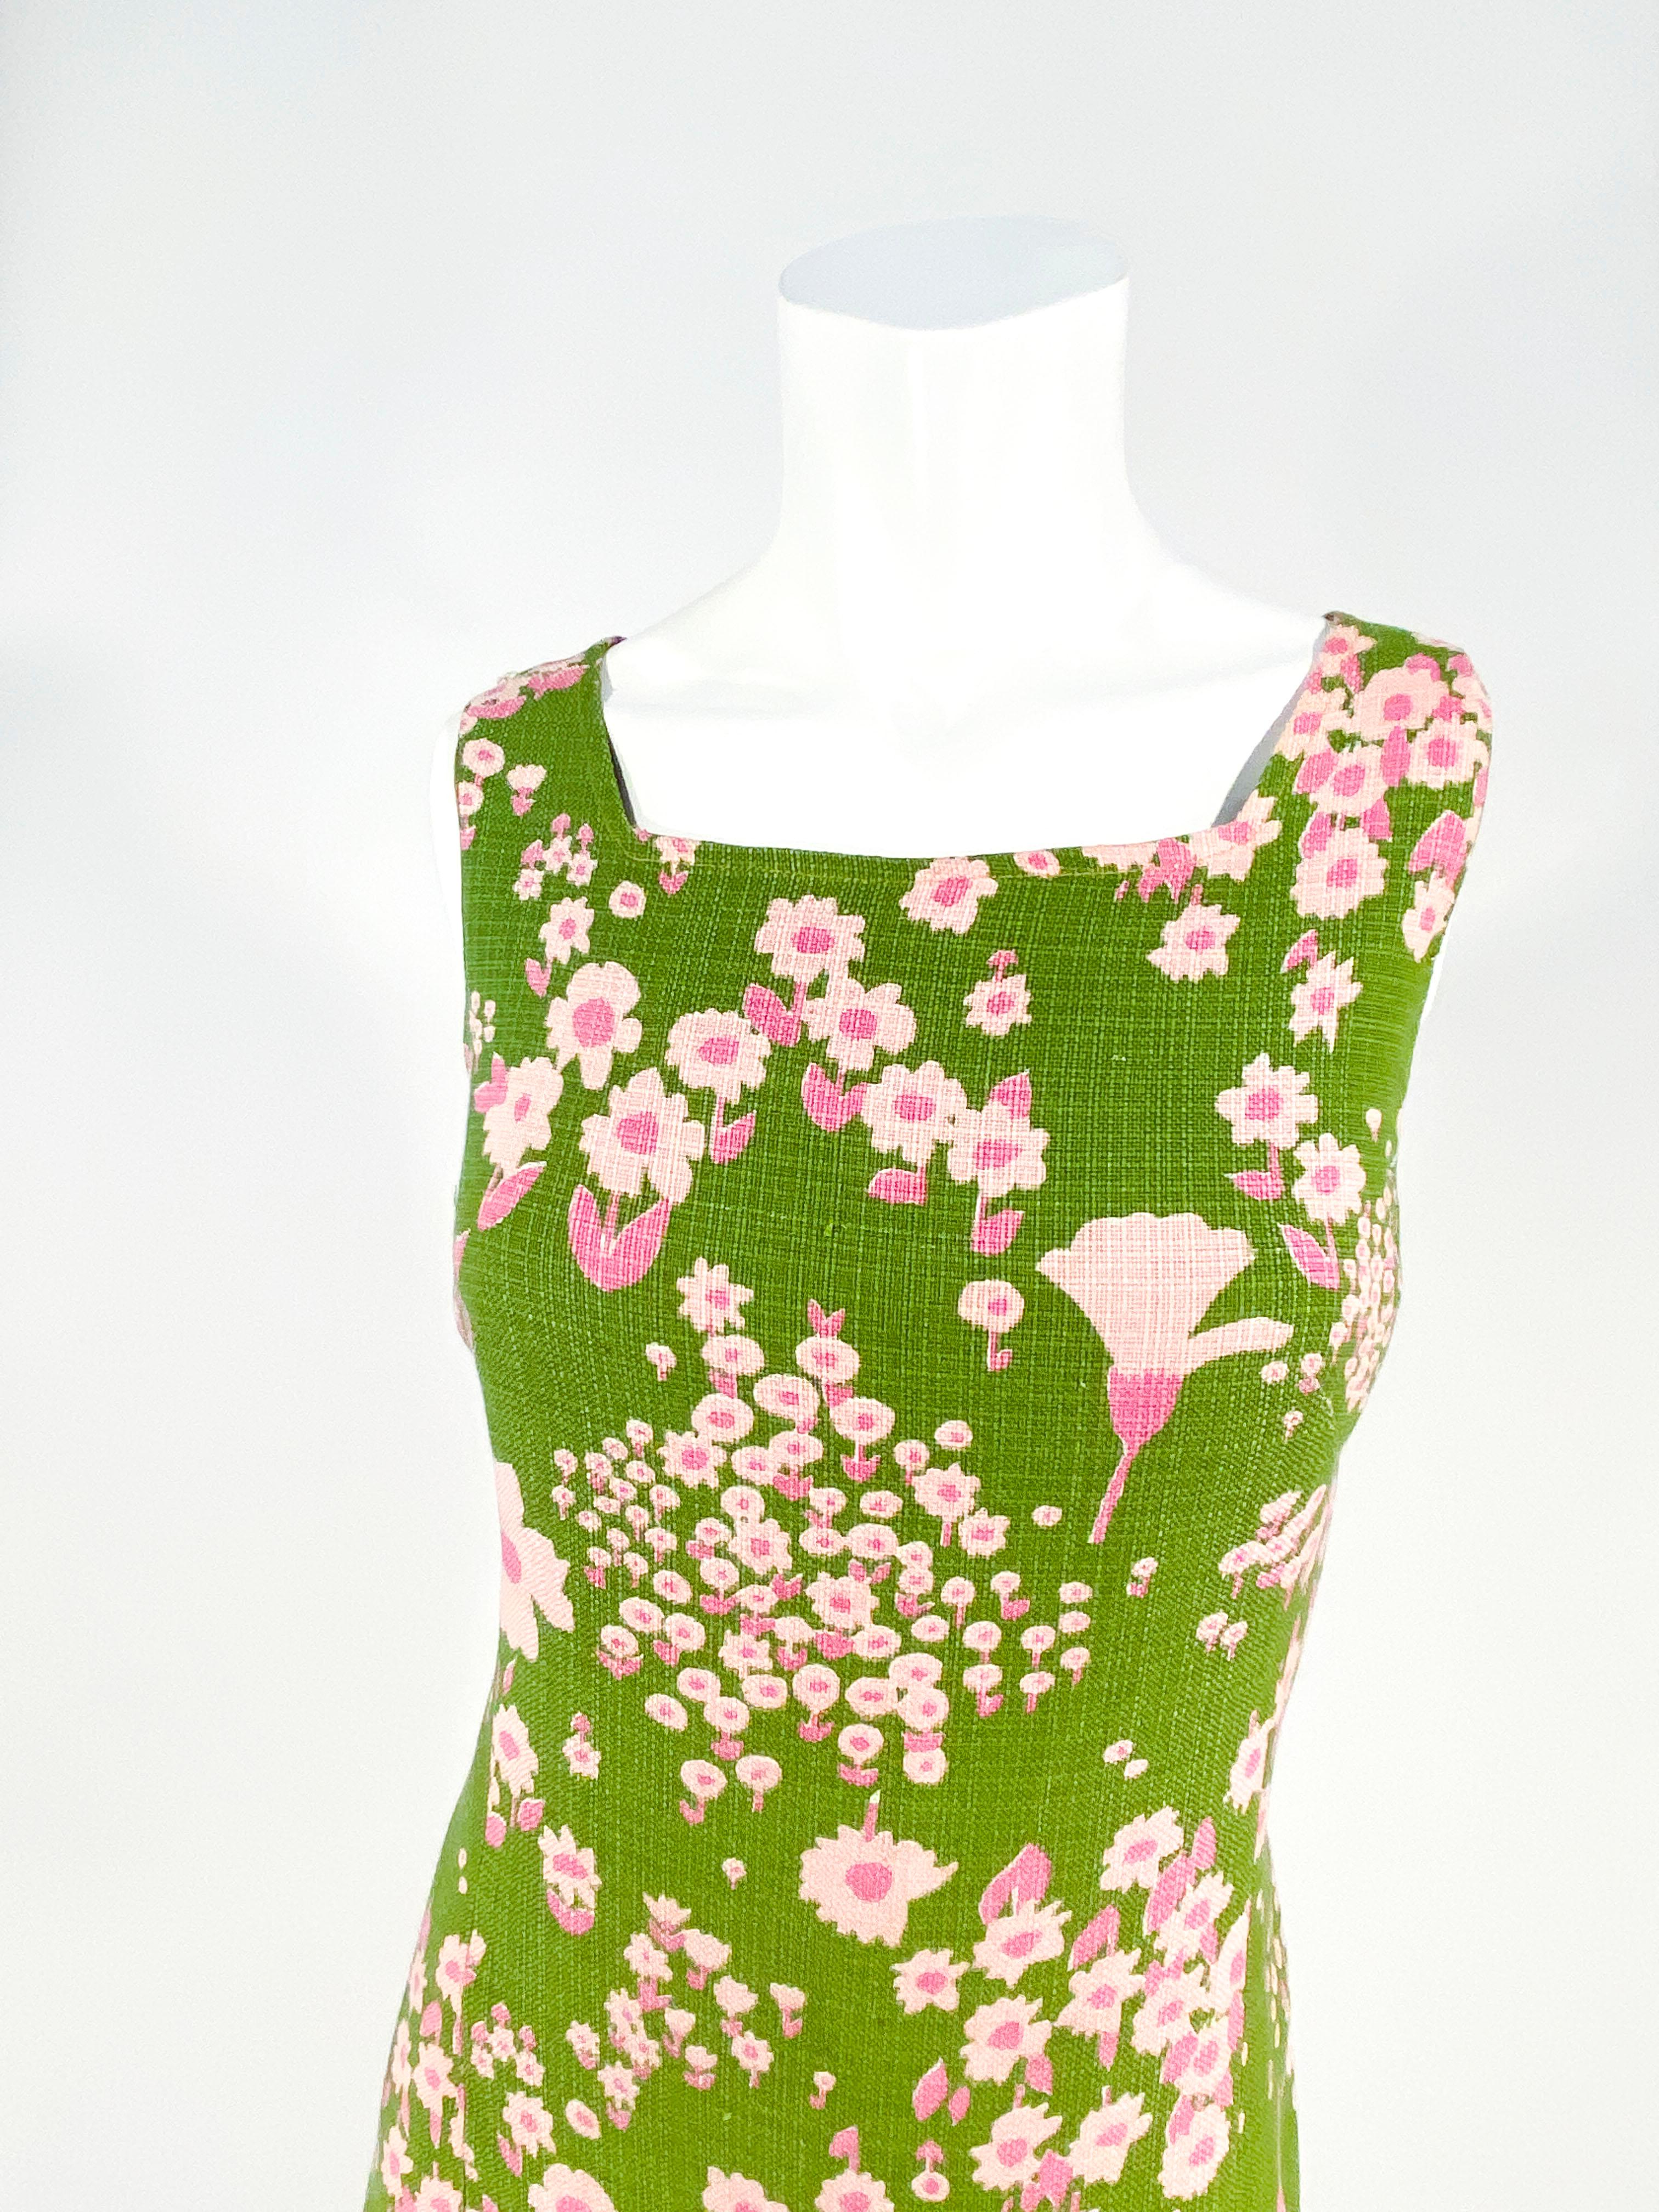 Avocadogrünes Tageskleid aus einer Baumwoll-Leinen-Mischung der 1960er Jahre mit einem Blumenmuster in zwei Rosatönen. Der Rock des Kleides ist in der Taille weit ausgestellt. Dieses Kleid ist vollständig gefüttert, ärmellos und hat einen